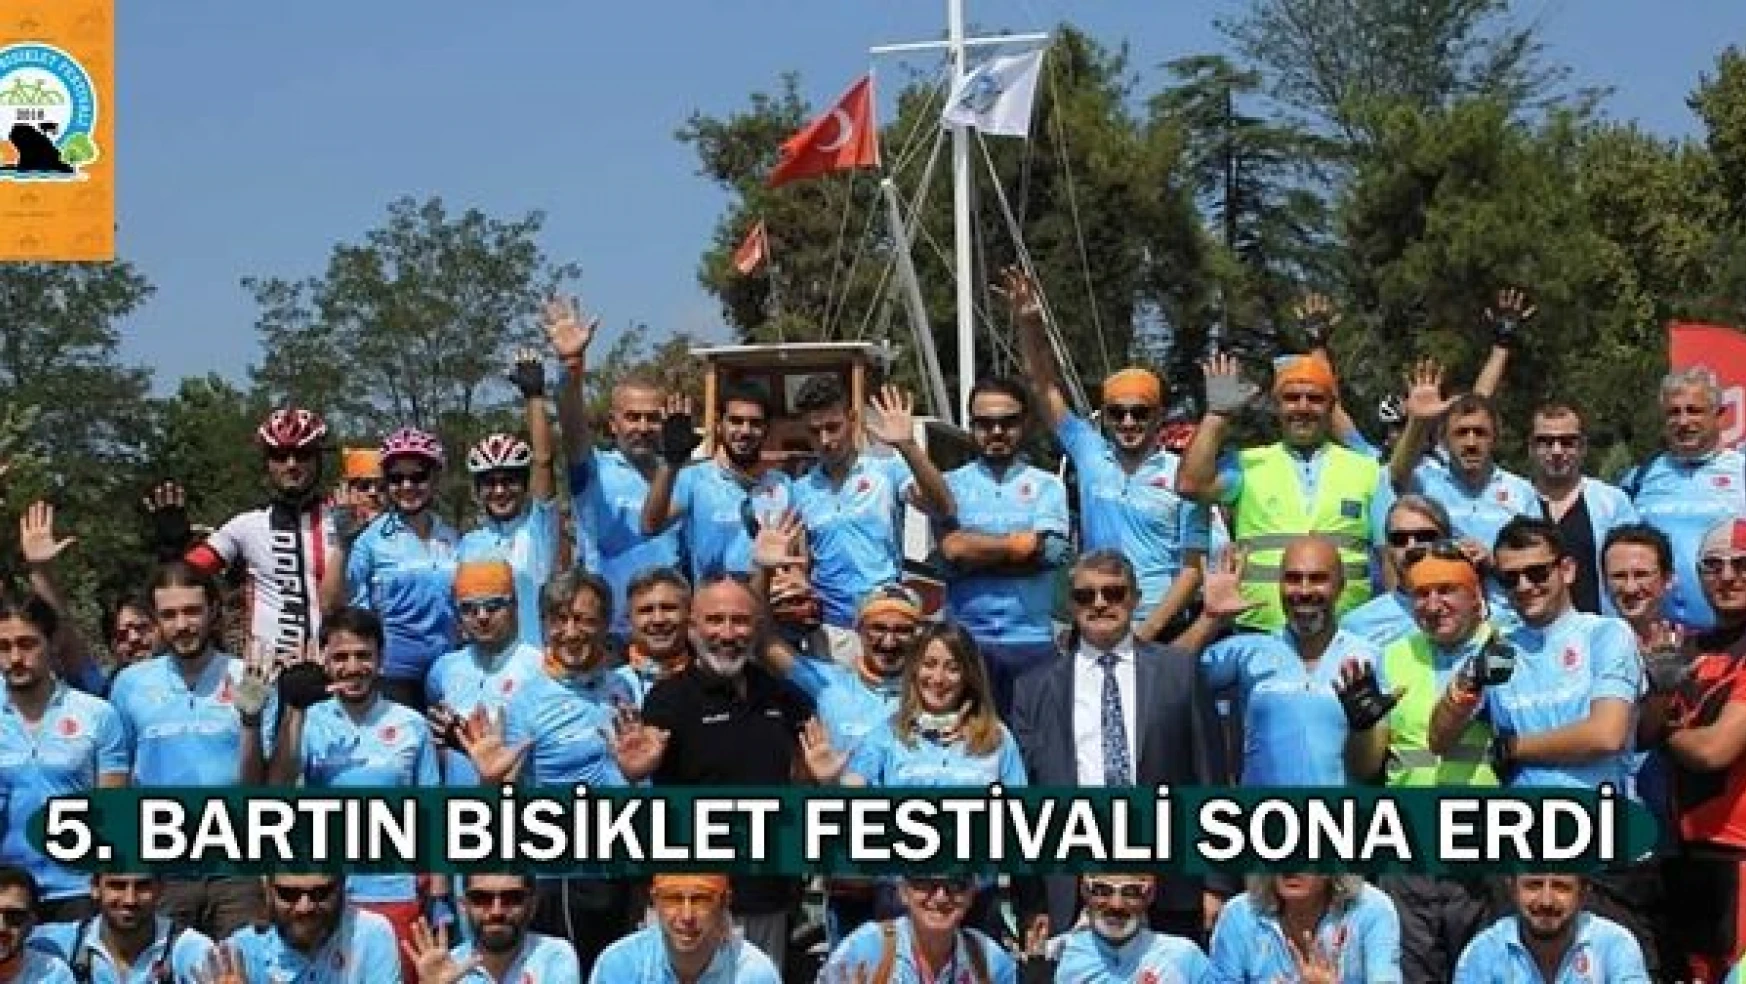 5. Bisiklet Festivali Sona Erdi!